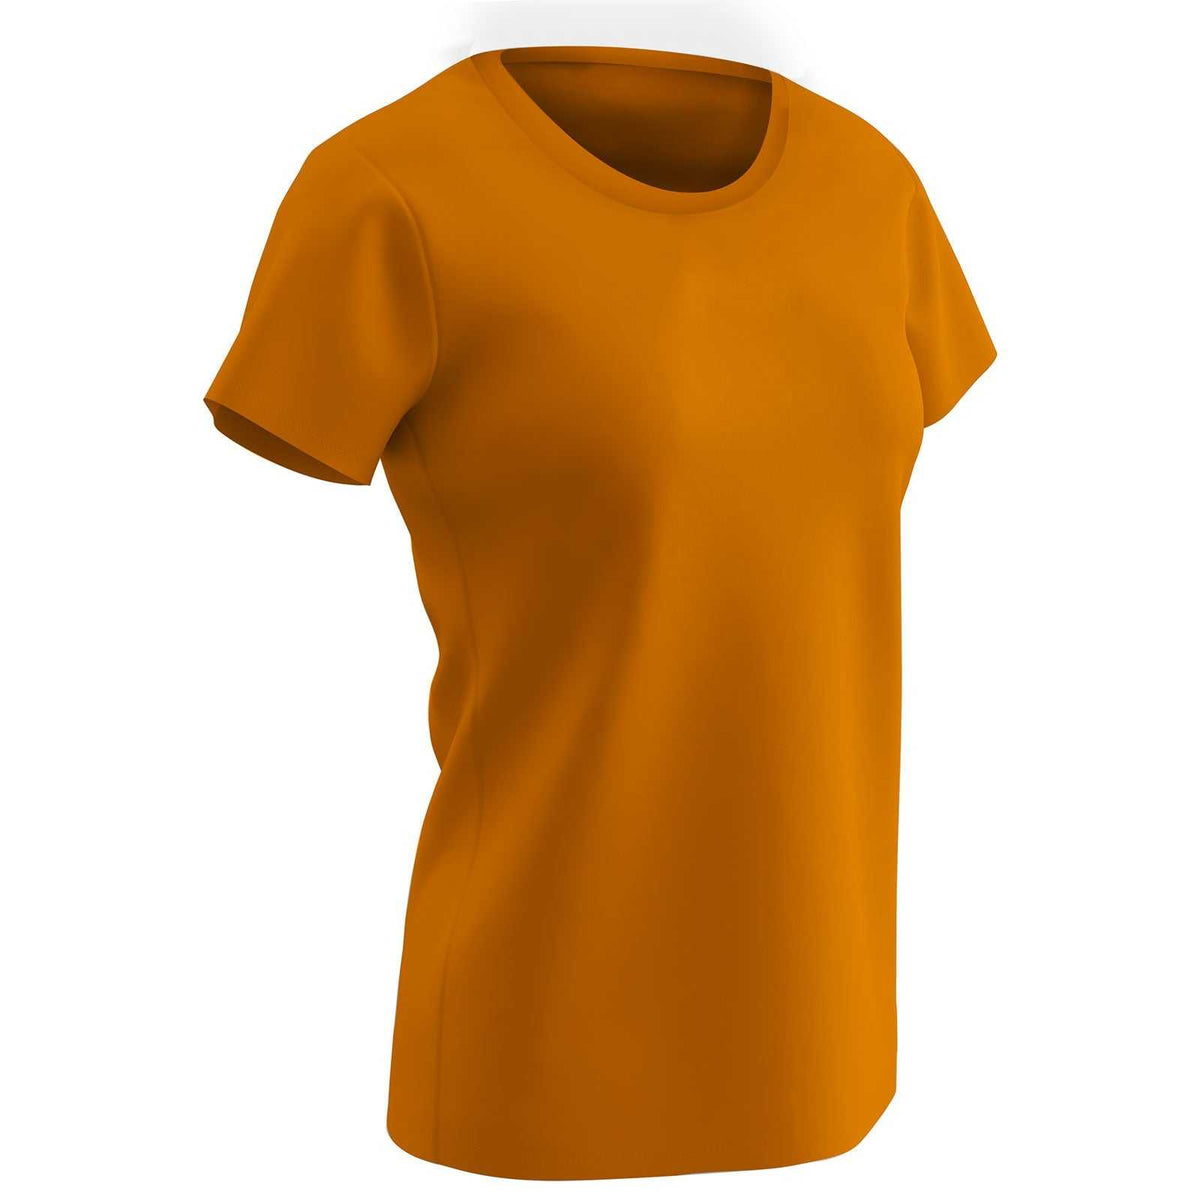 Champro BST99W Vision T-Shirt - Neon Orange - HIT a Double